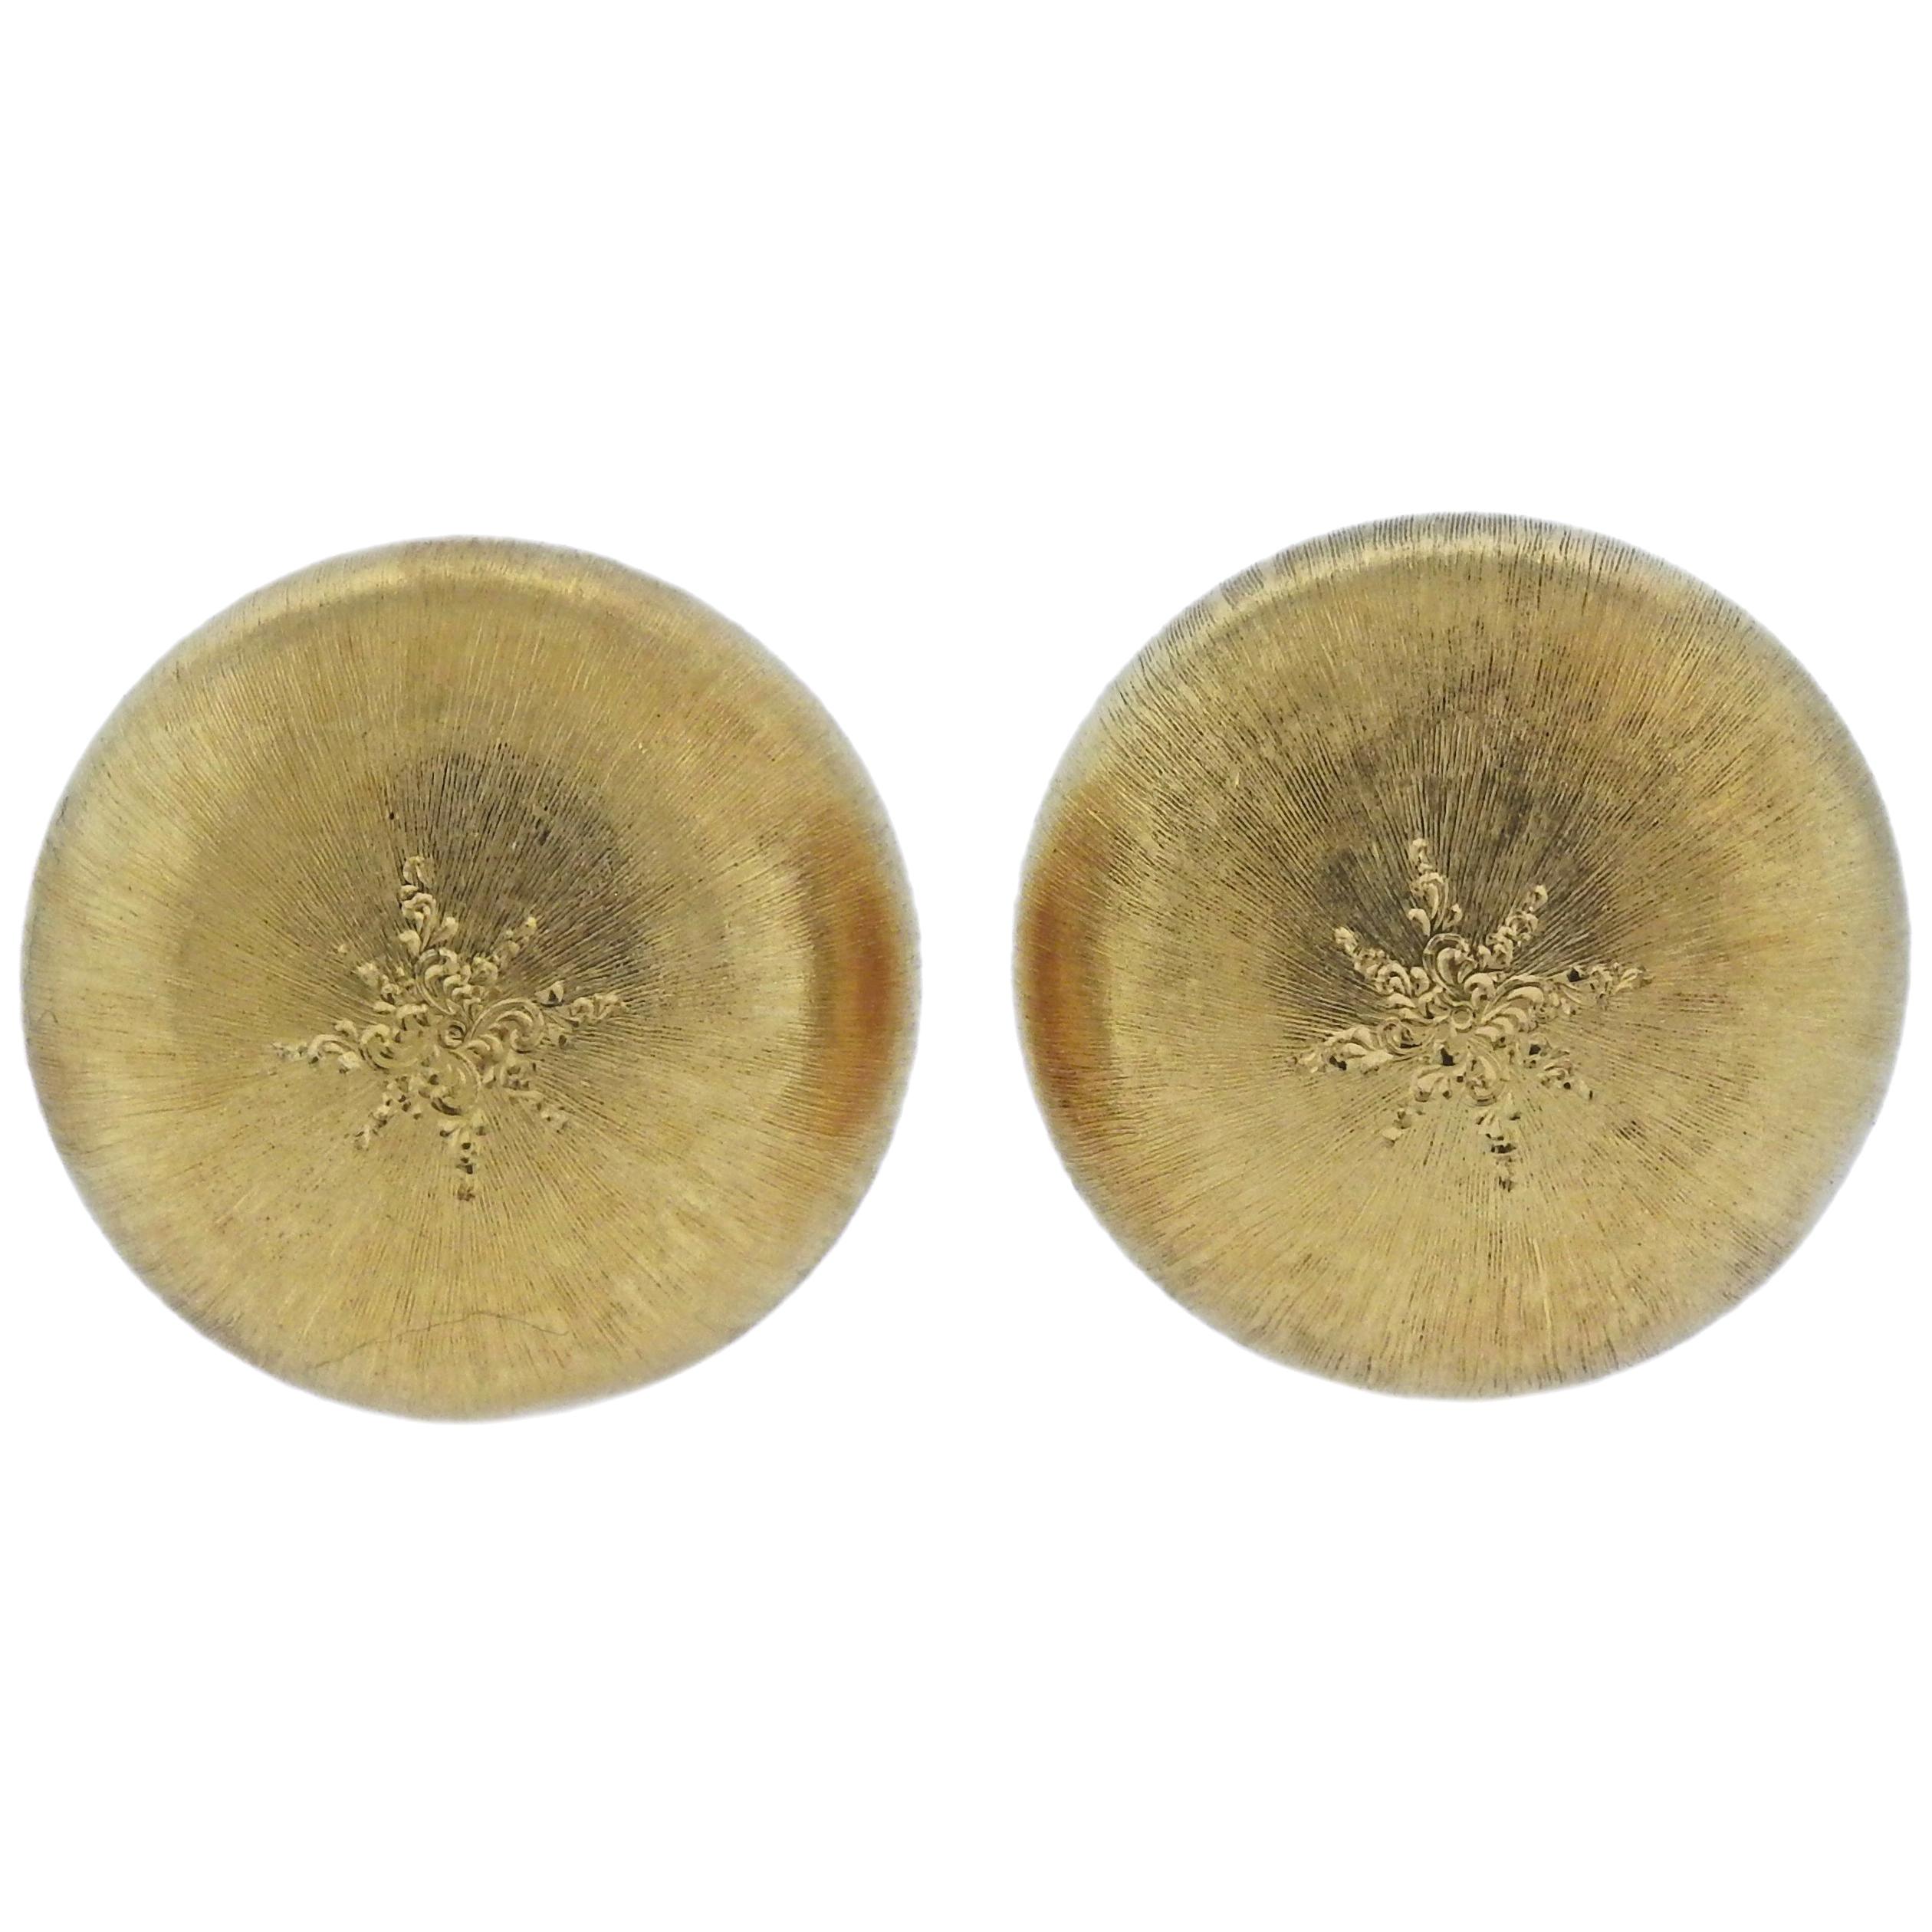 Buccellati Macri Large Gold Button Earrings